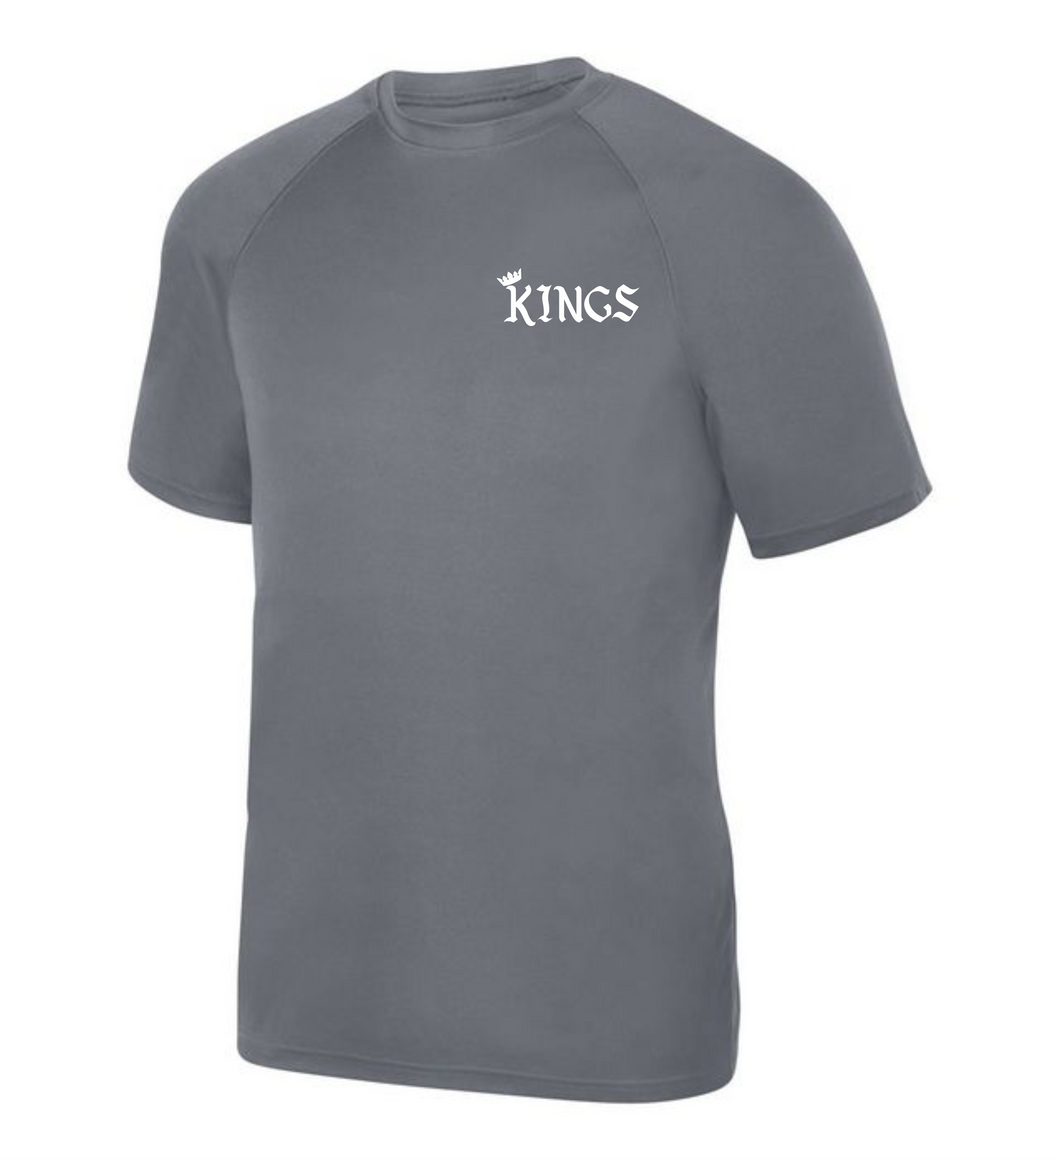 ATL-KINGS-623-2 - Attain Wicking Raglan Short Sleeve Tee - KINGS Logo